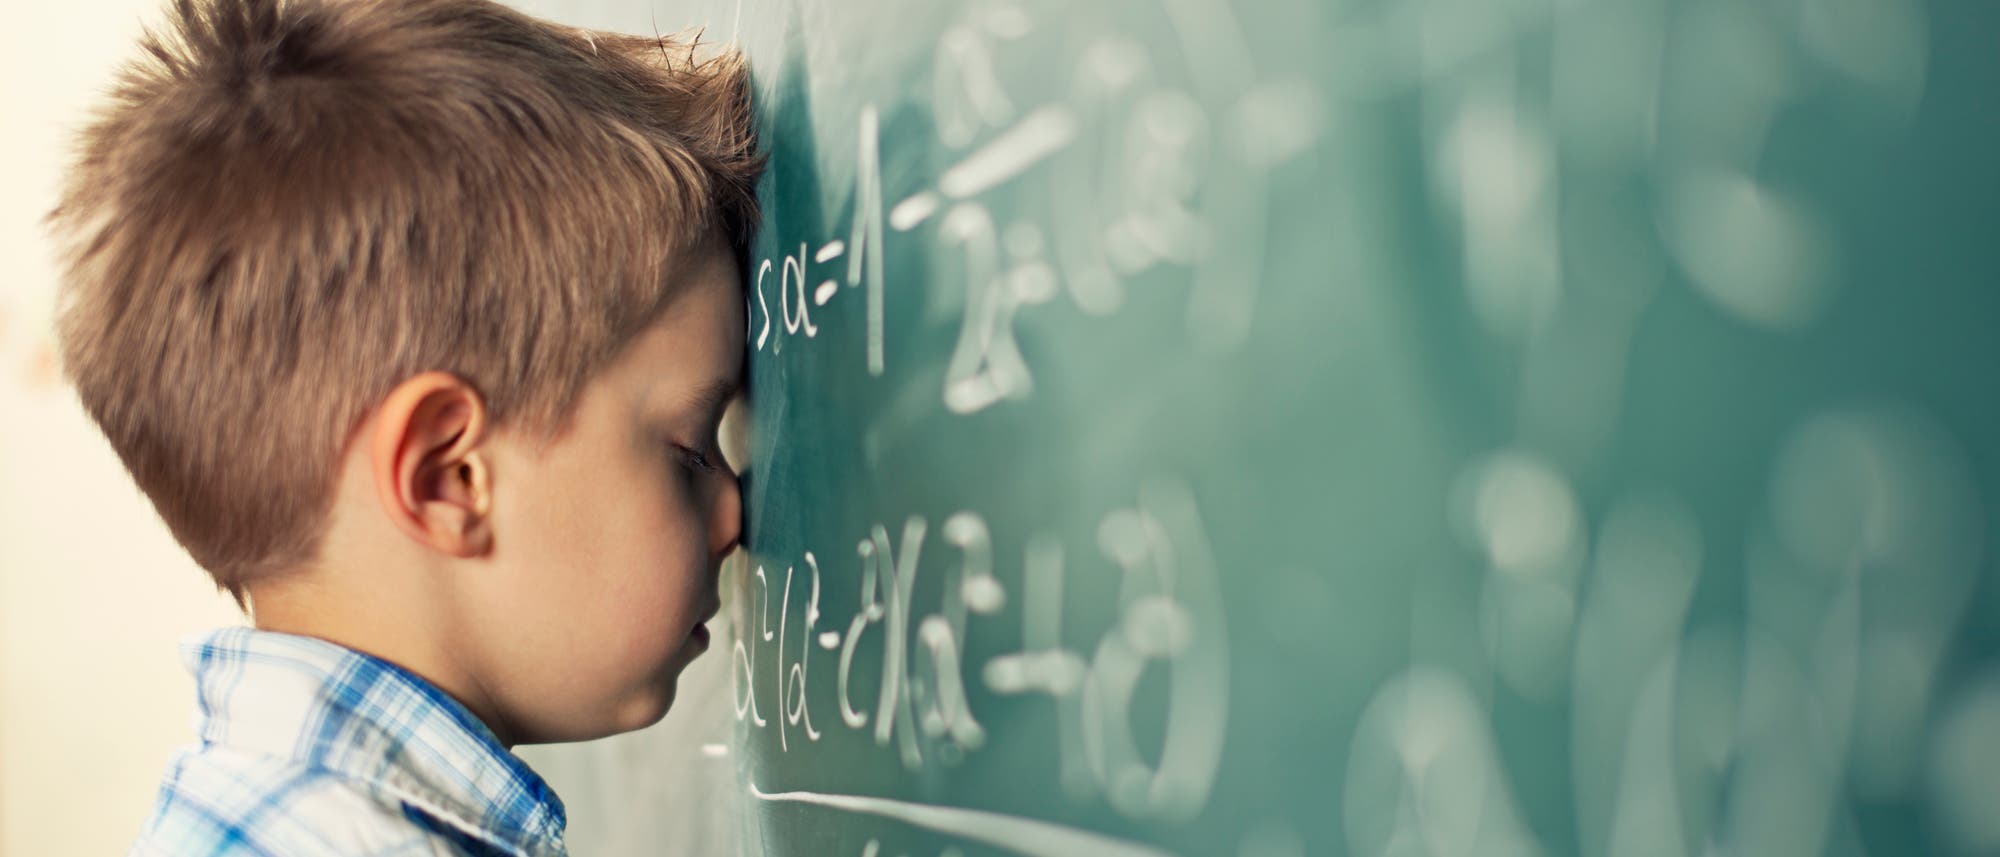 Ein Schüler lehnt mit dem Kopf an einer Tafel mit Mathe-Formeln.